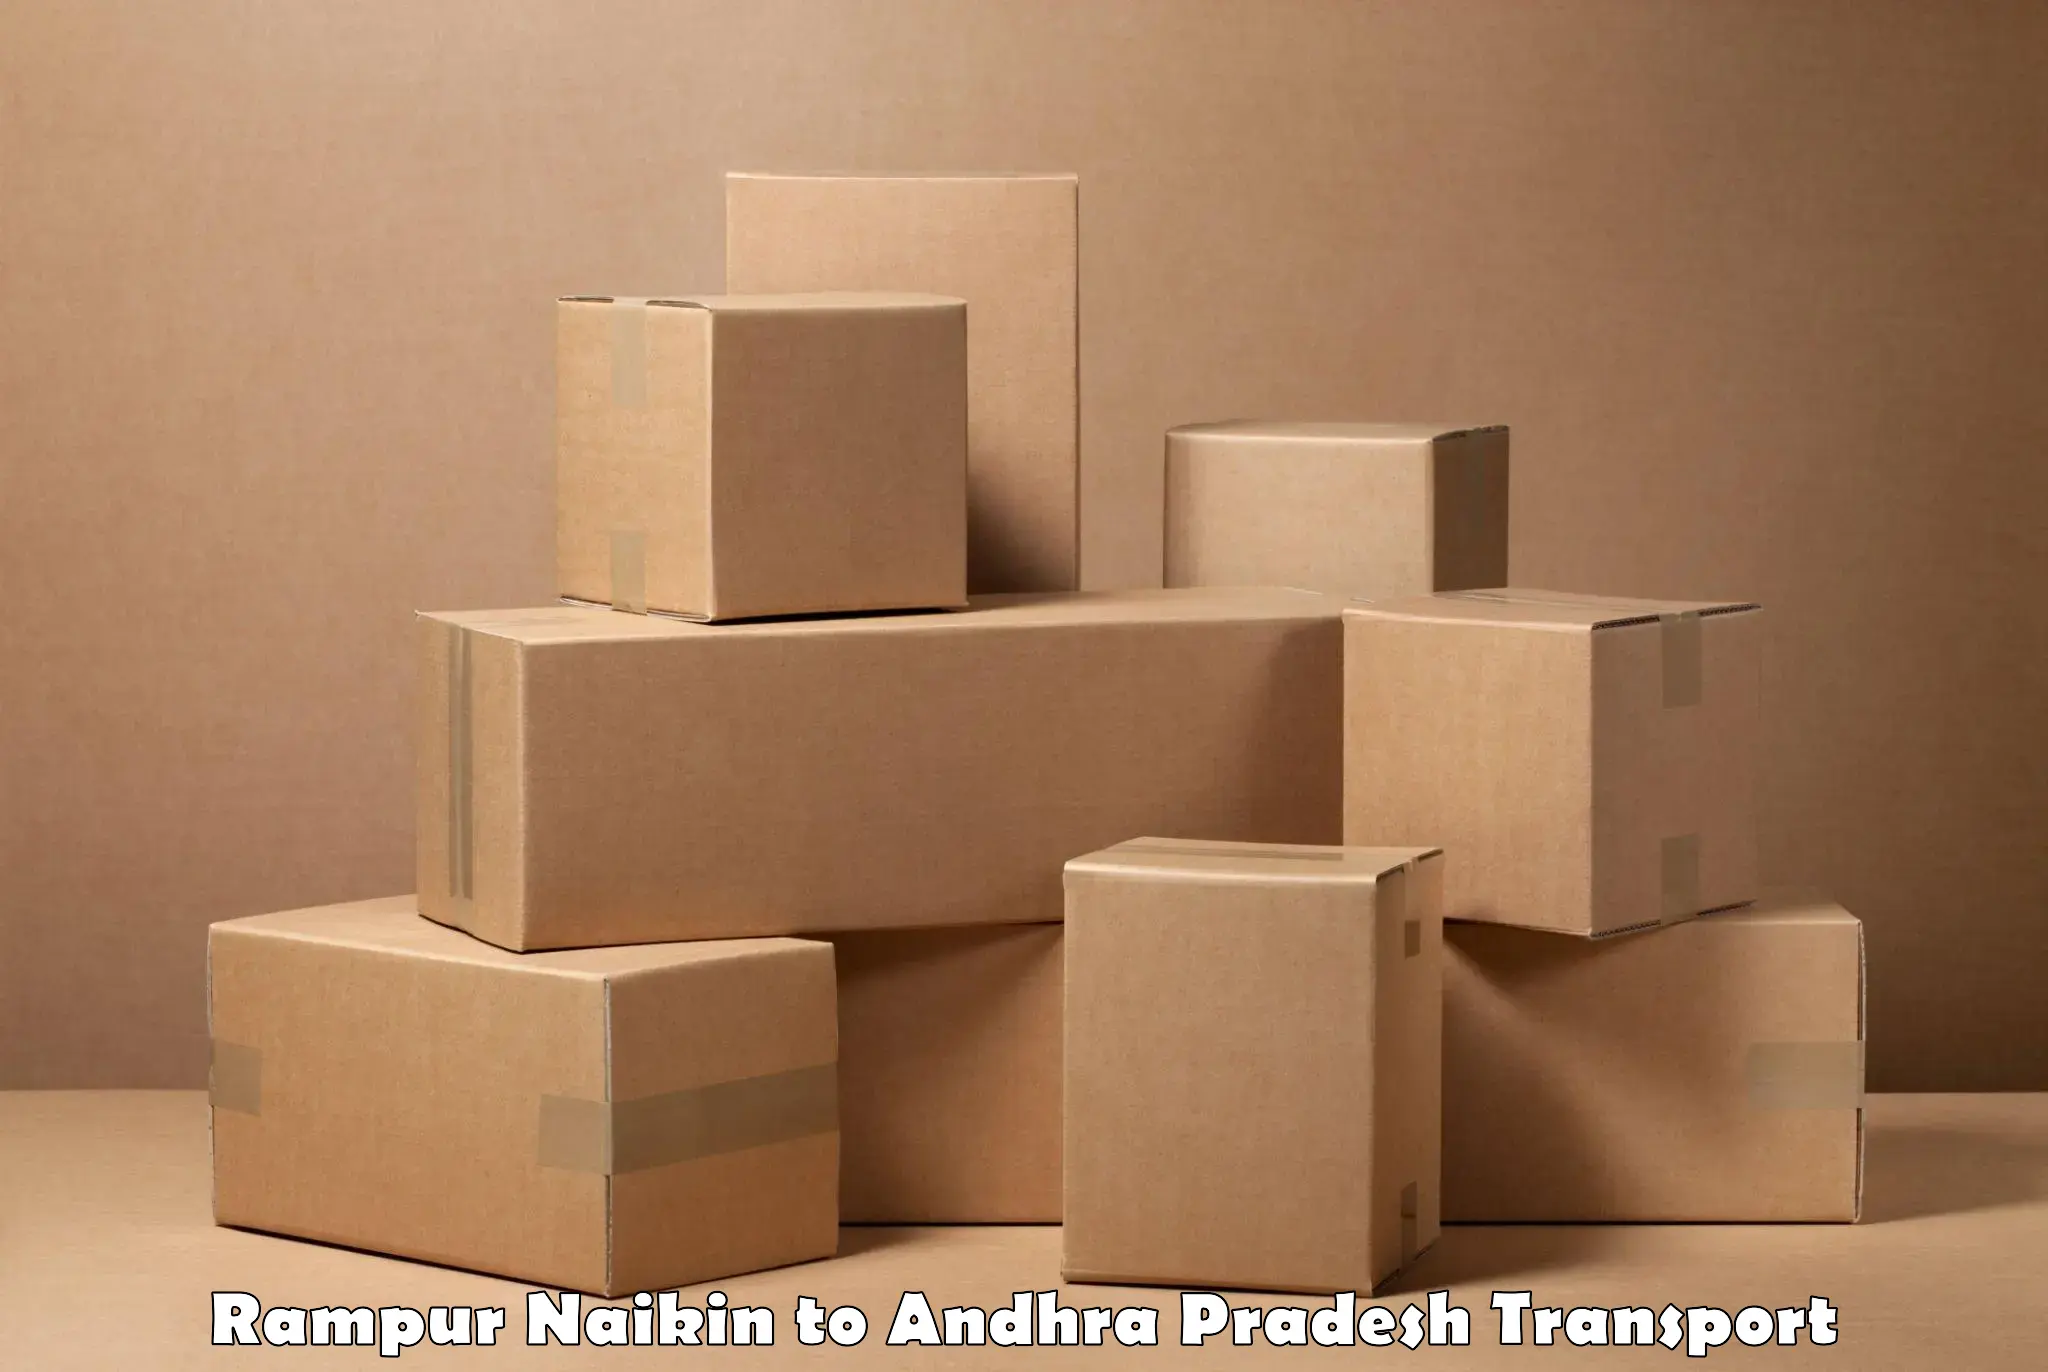 Parcel transport services Rampur Naikin to Andhra Pradesh